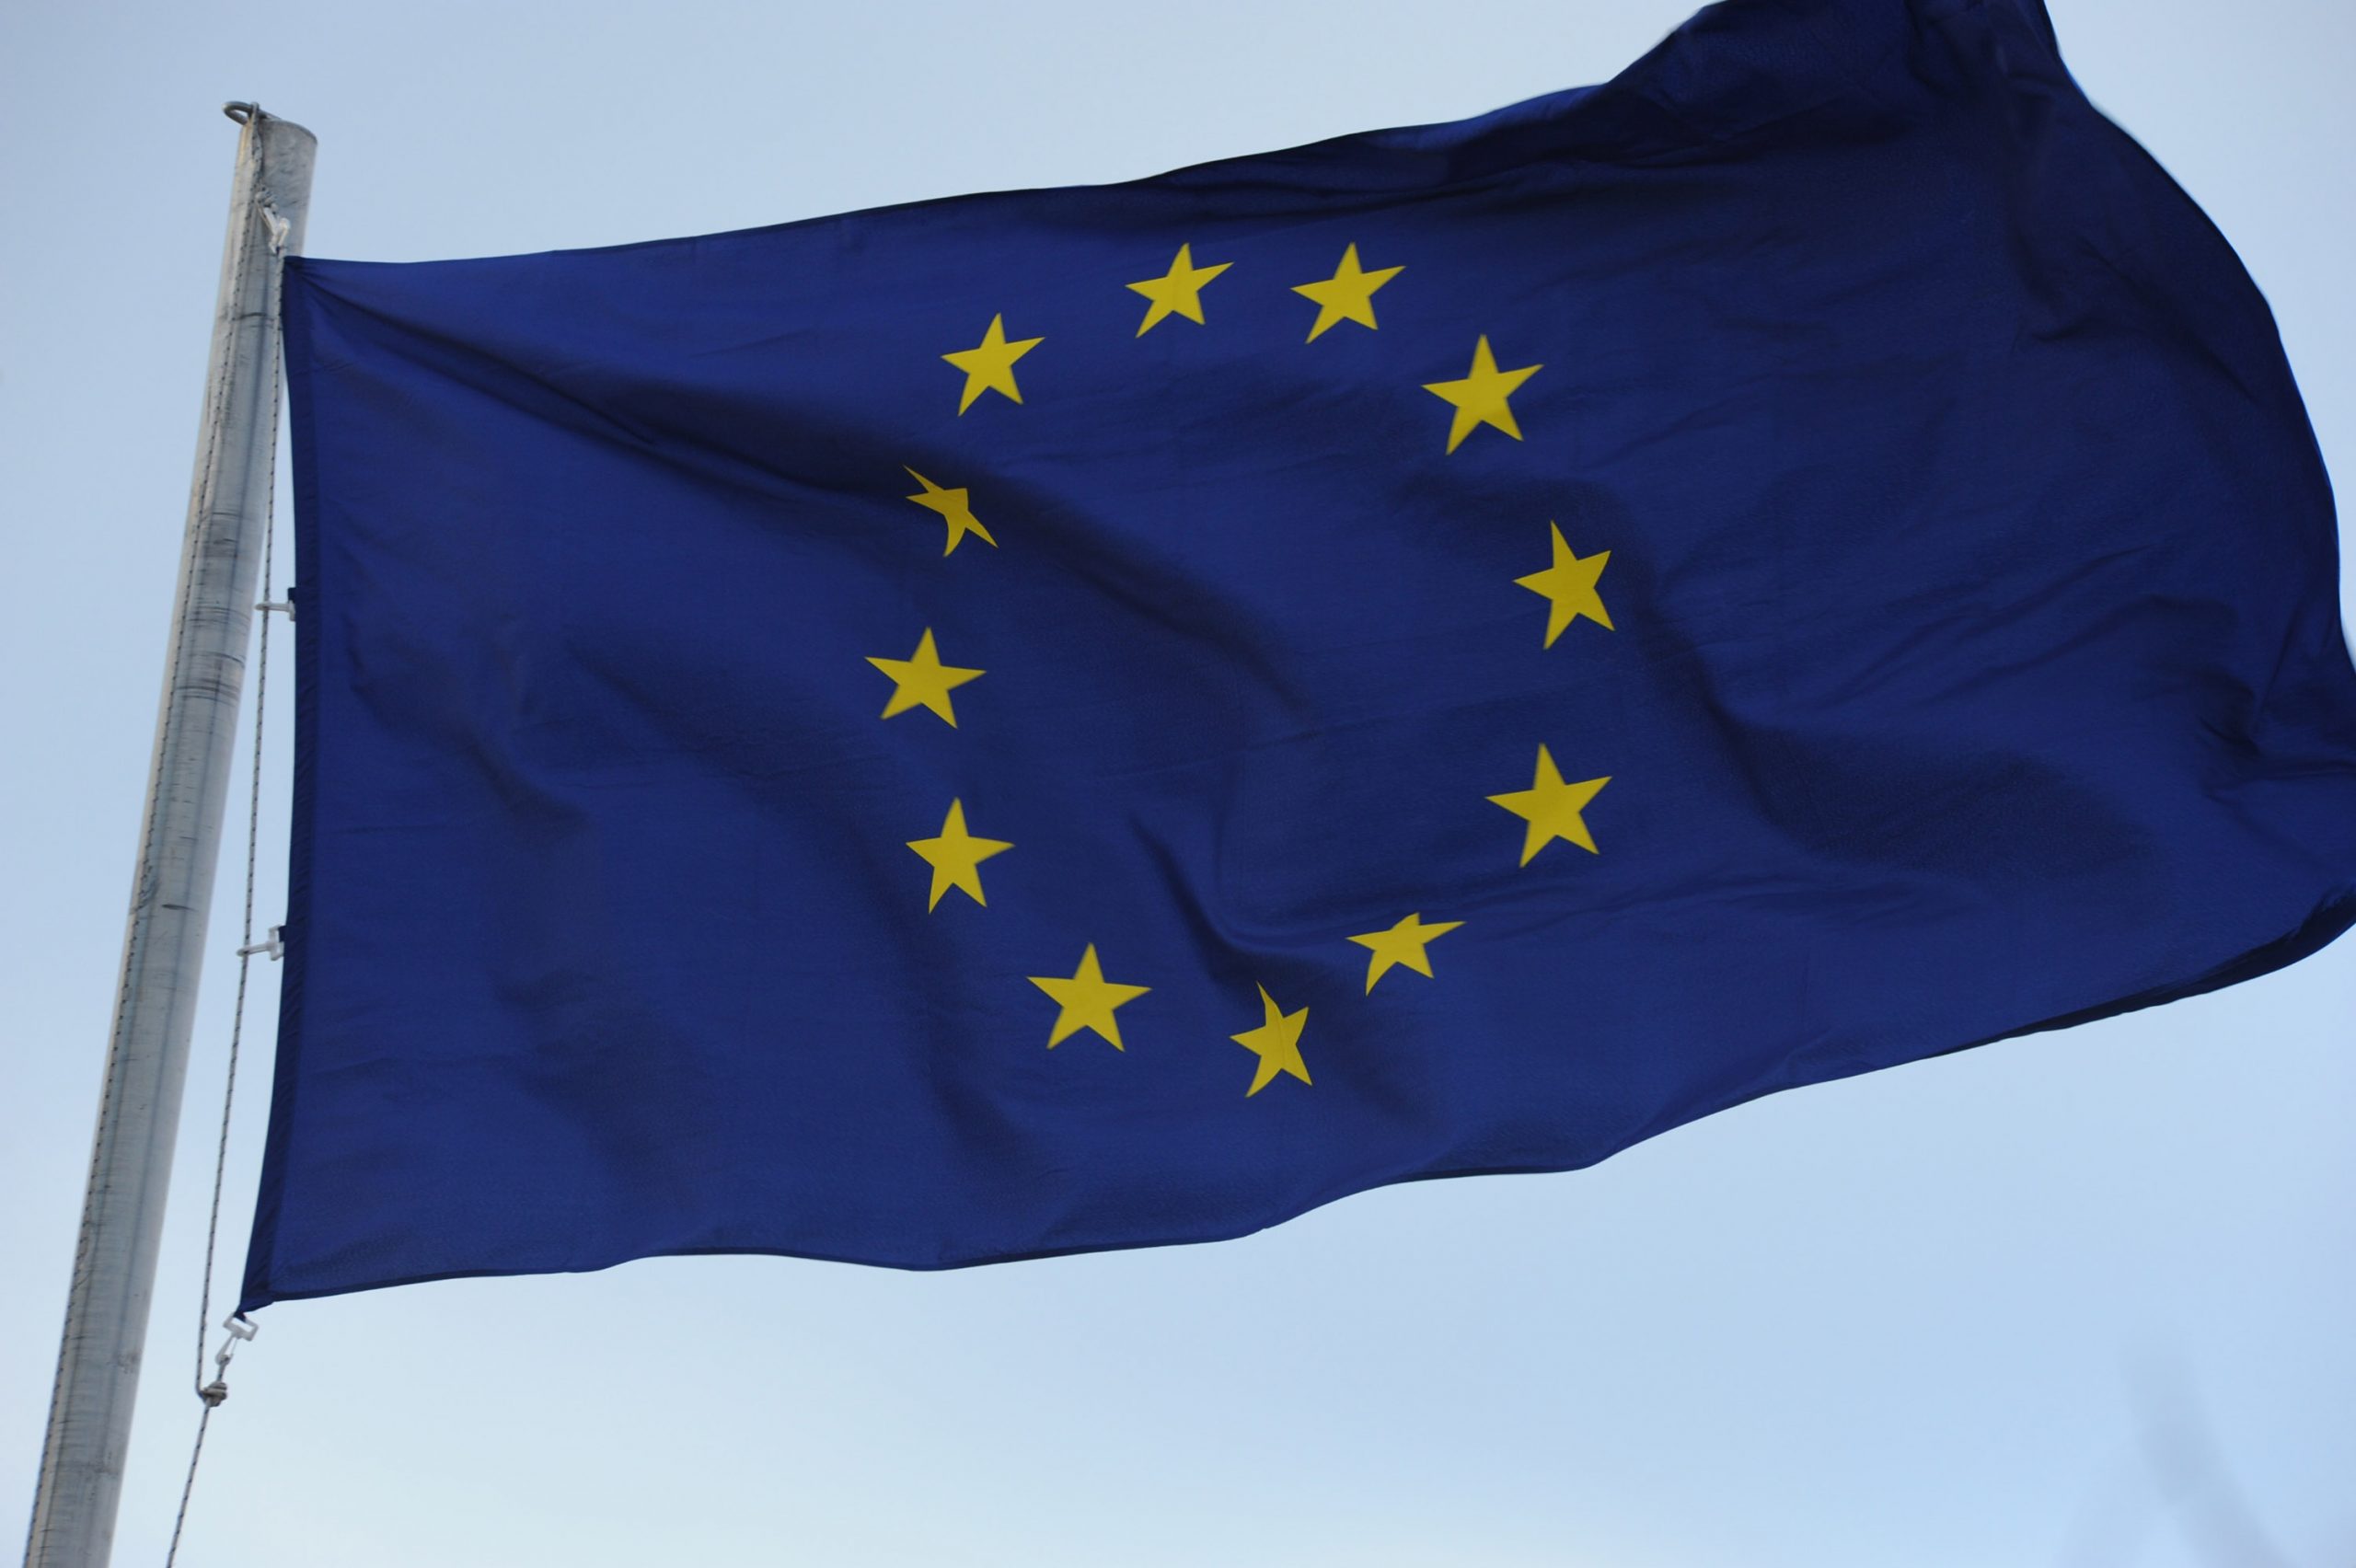 19.01.2015., Sibenik - Zastava Europske unije. 
Photo: Hrvoje Jelavic/PIXSELL